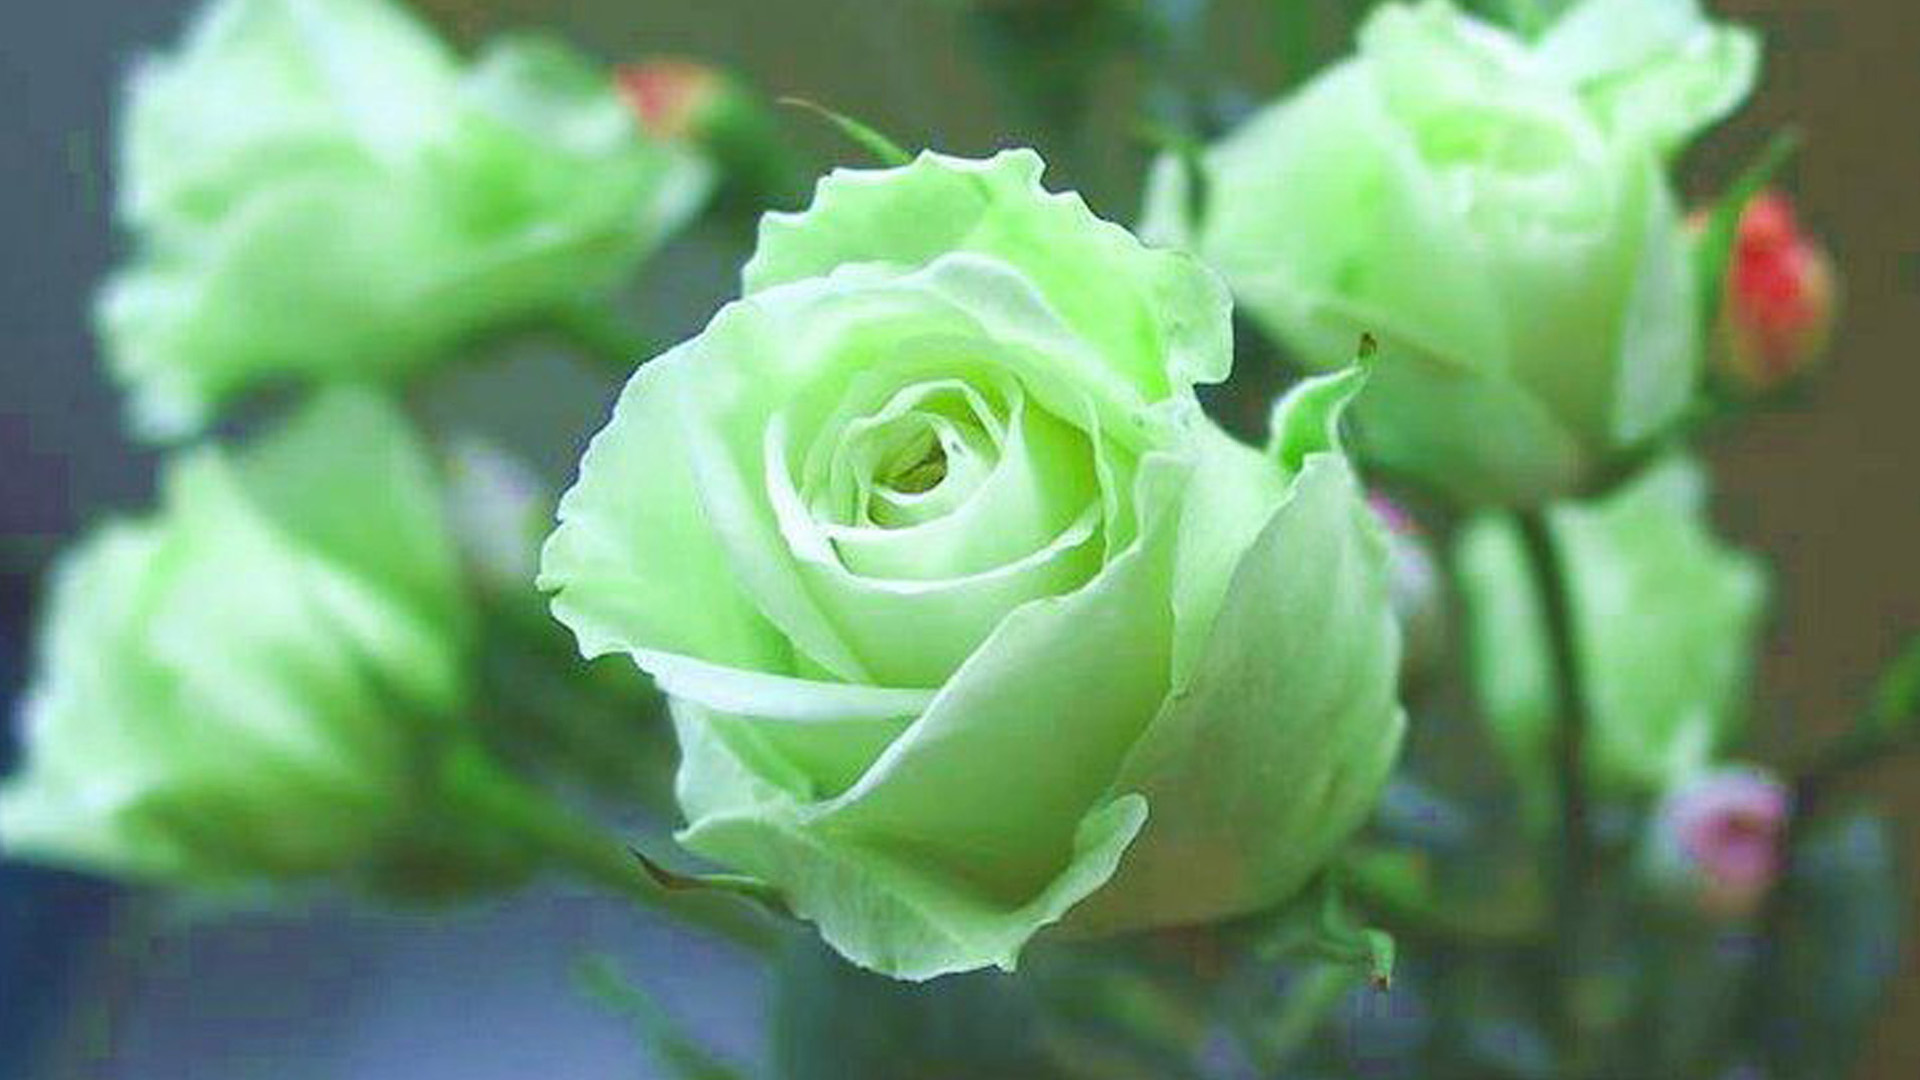 Green Rose Wallpaper - Green Rose Flower Images Hd - HD Wallpaper 